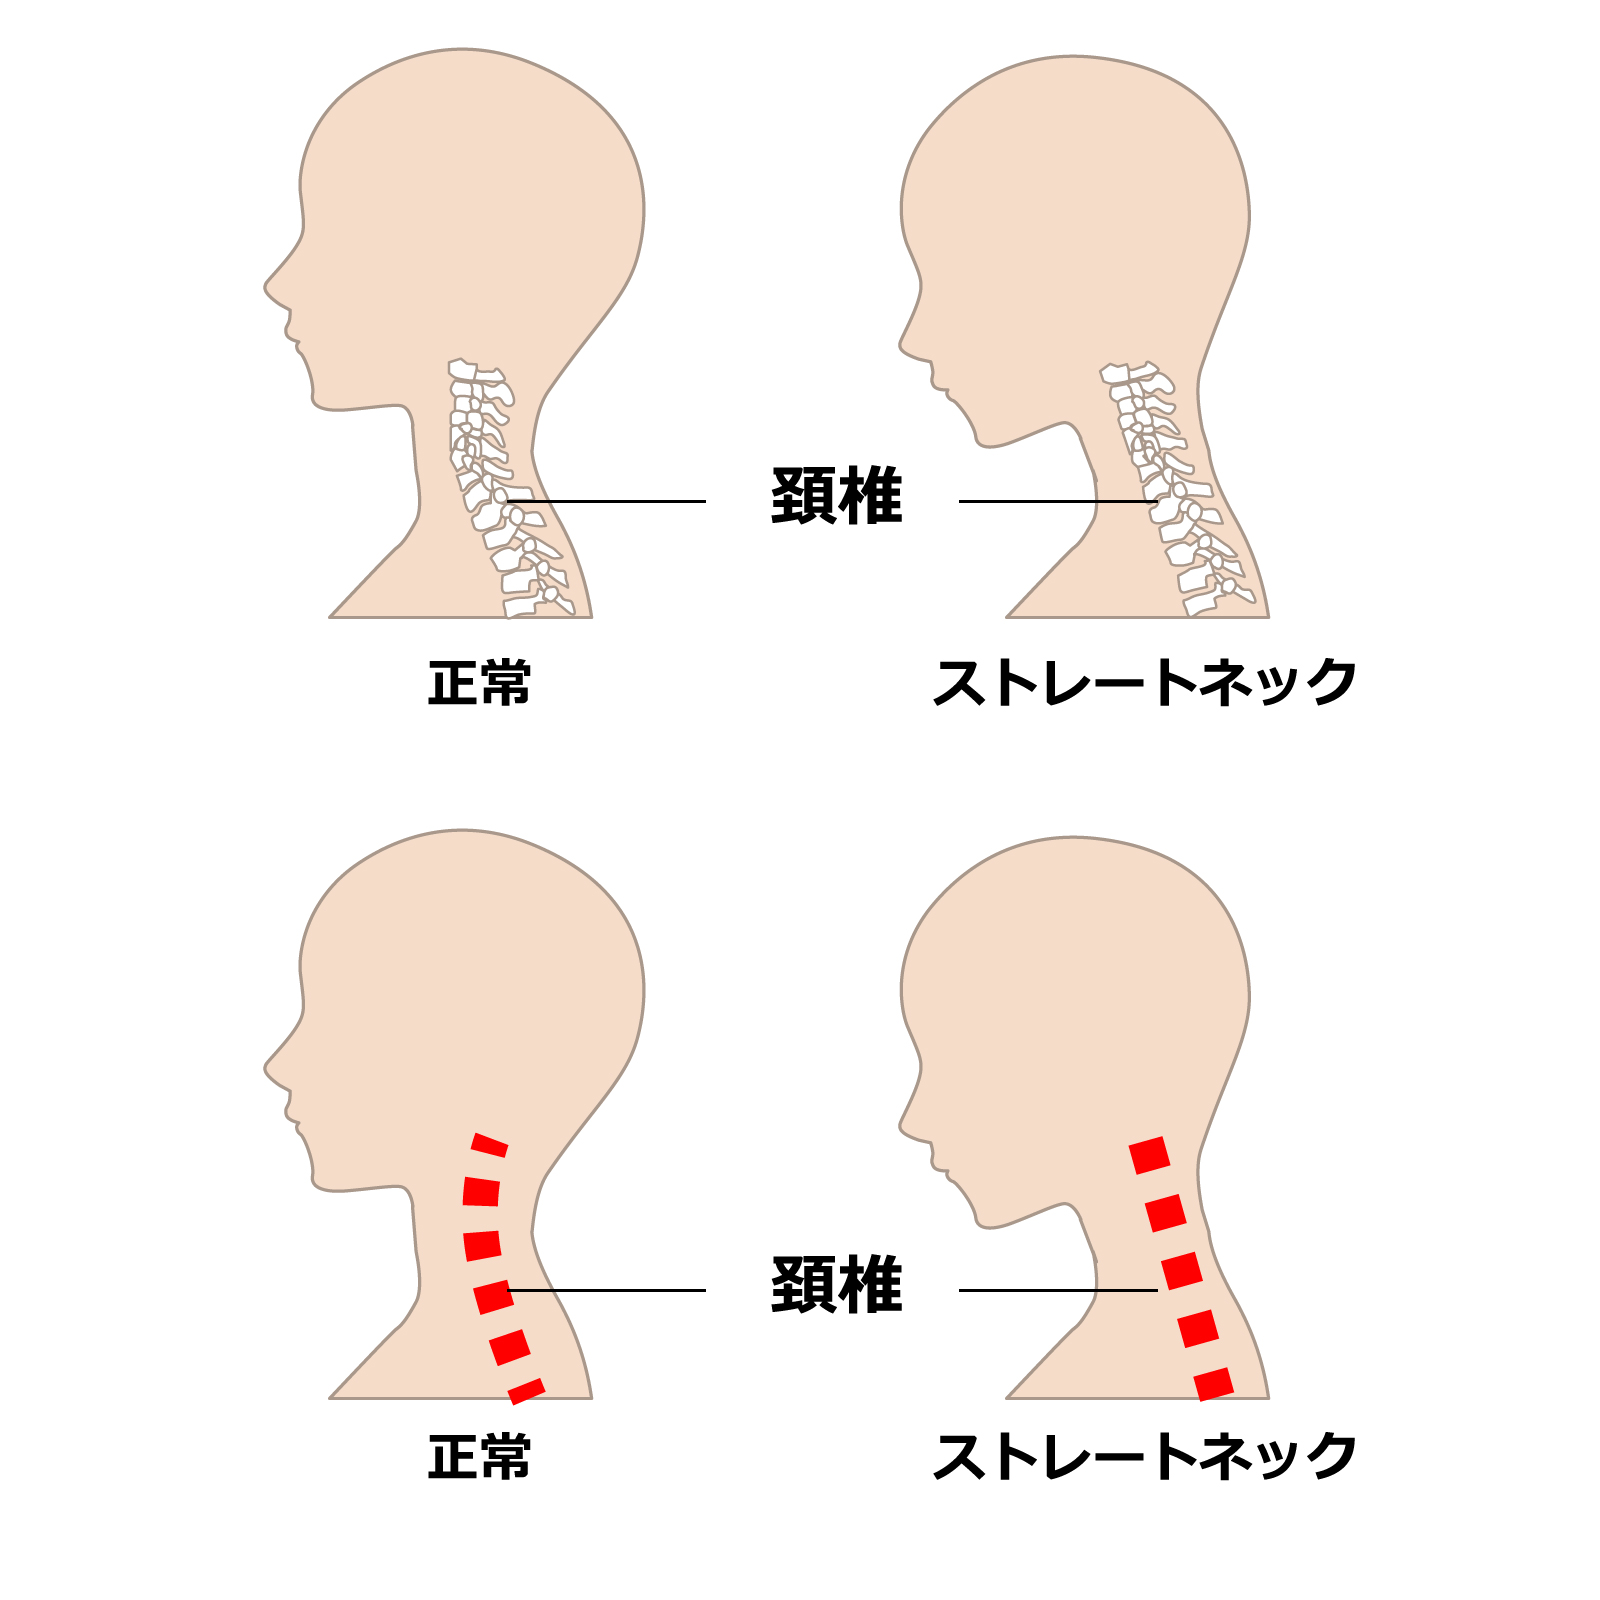 首 ストレッチ スマホ 【ストレートネックの治し方】首・肩の痛みは「スマホ首」が原因 ストレッチと生活習慣で改善可能